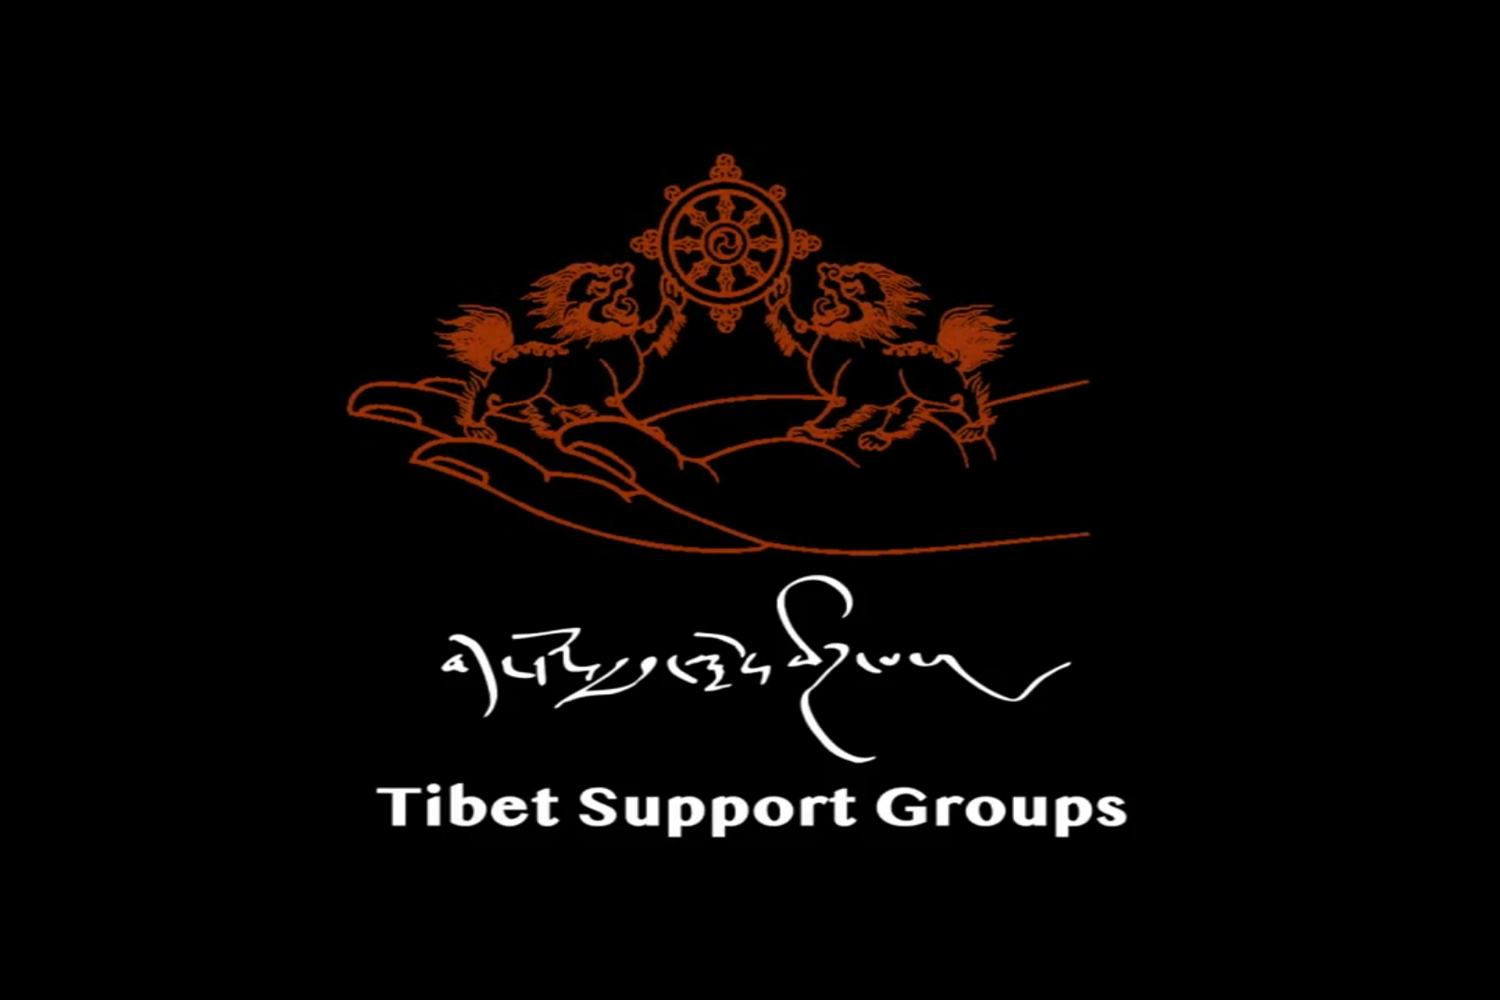 Tibet TV - Tibet Support Groups